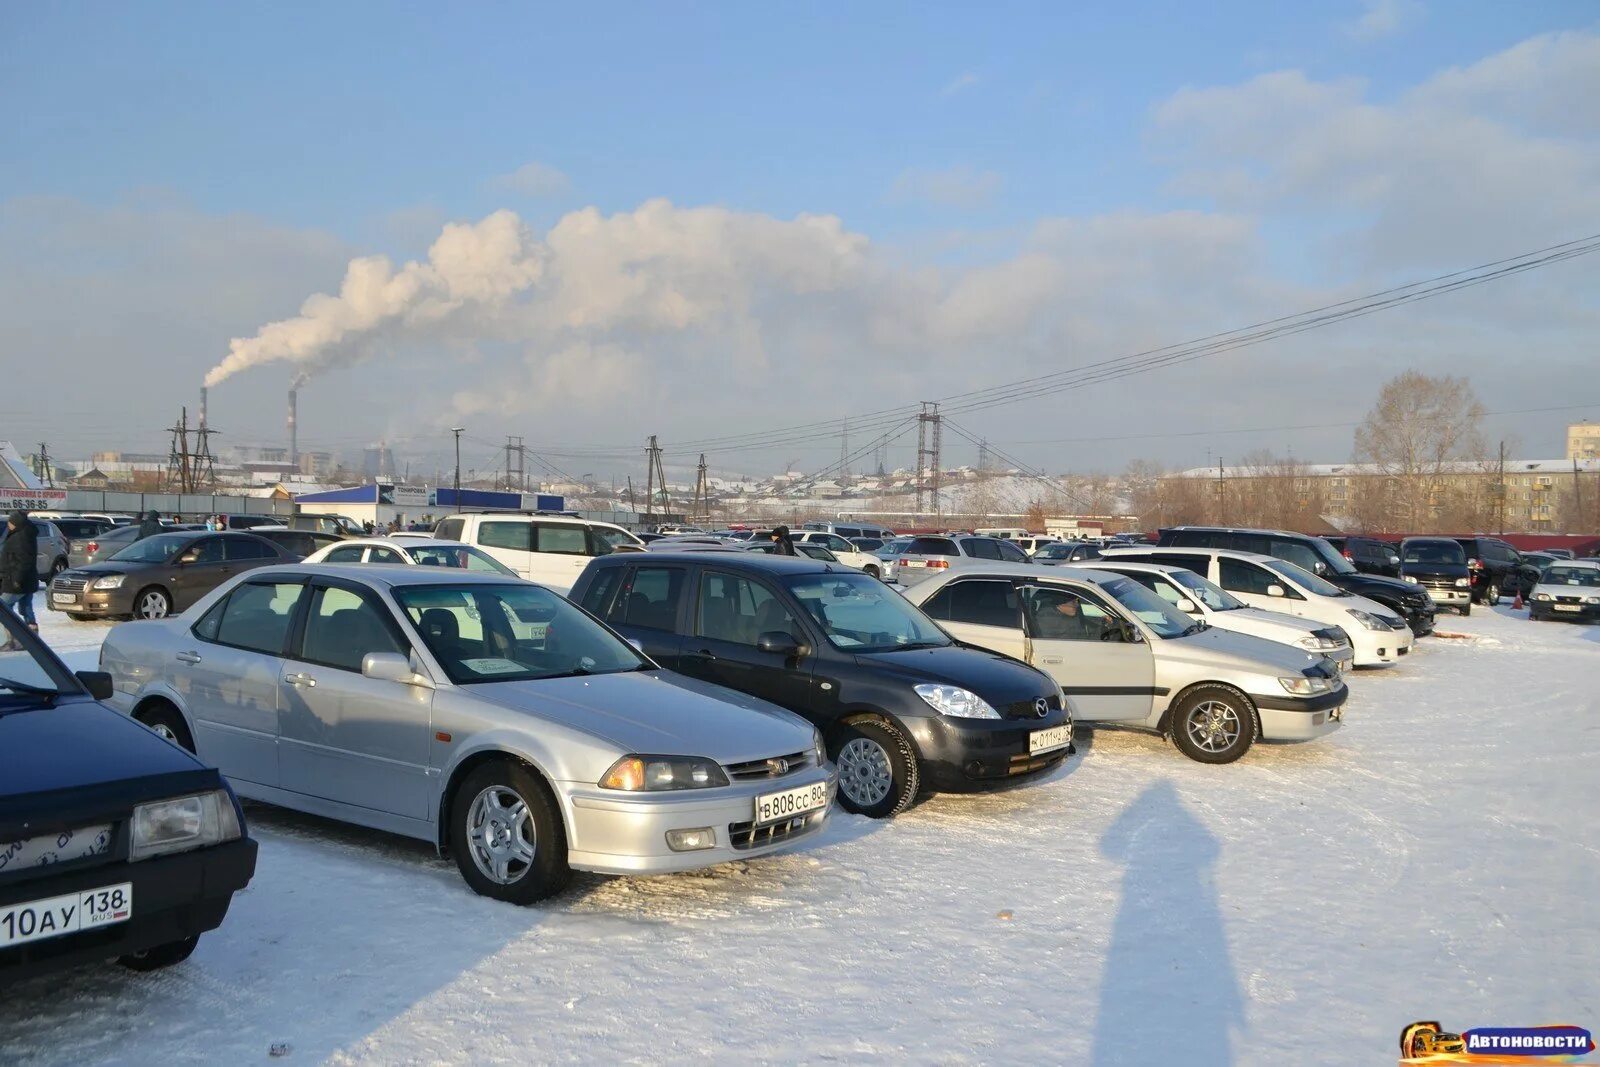 Цены автомобилей улан удэ. Авторынок зимой. Улан-Удэ авторынок. Улан-Удэ машины. Машины на авторынке Улан-Удэ.